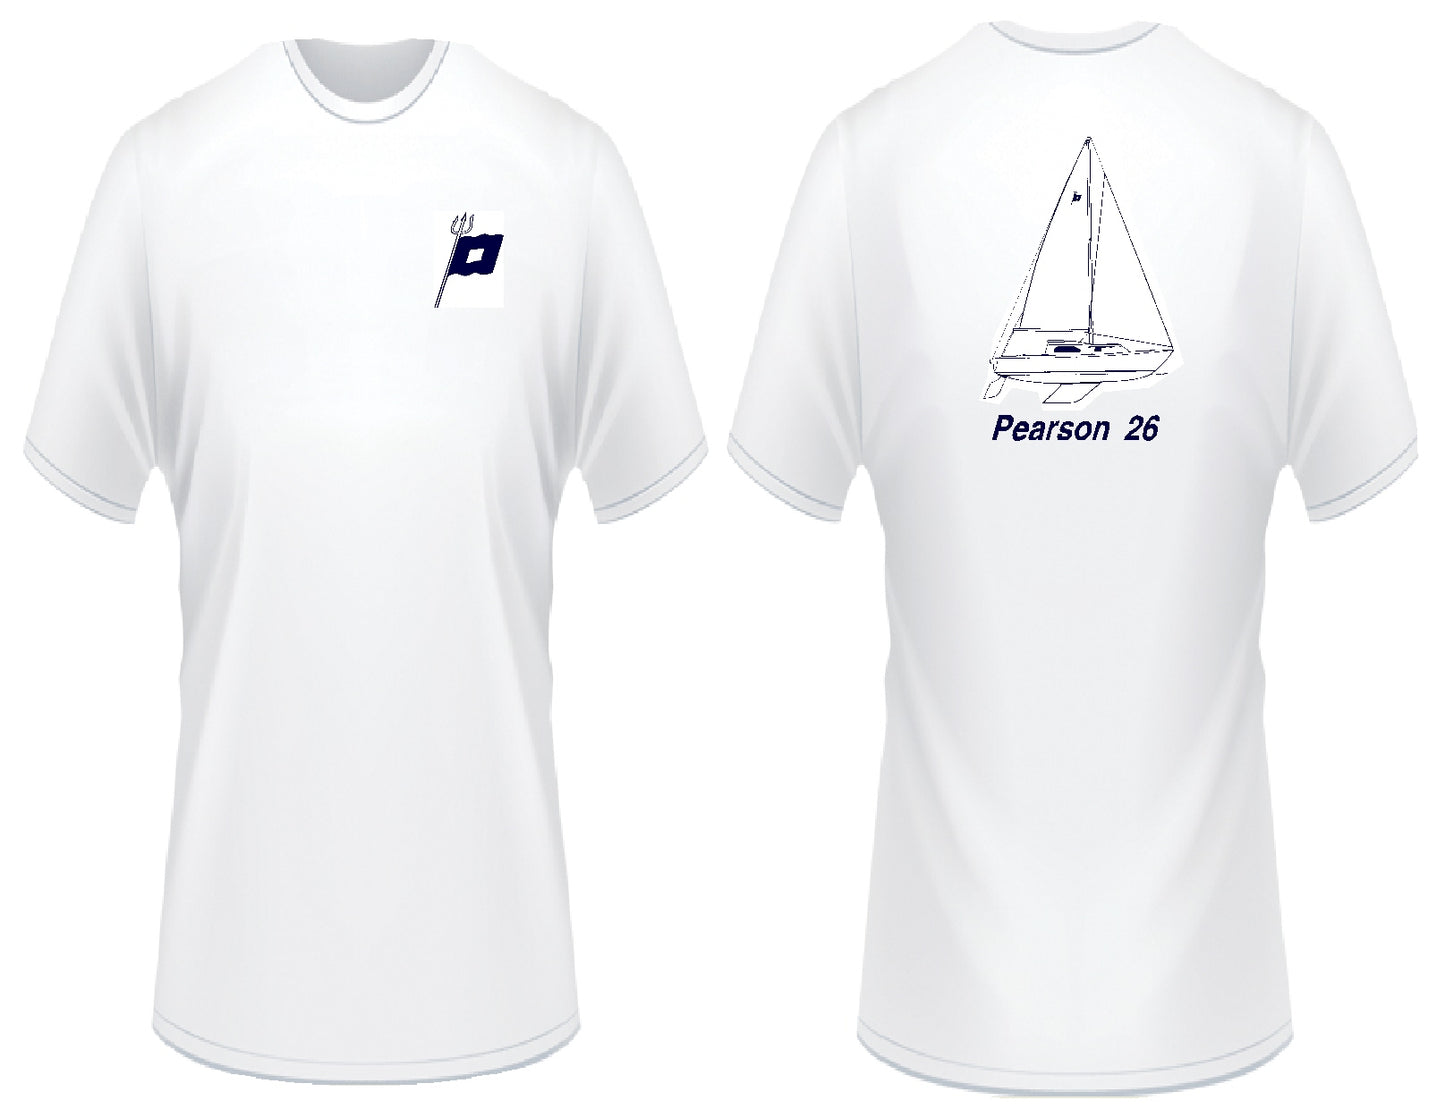 Pearson 26 T-Shirt